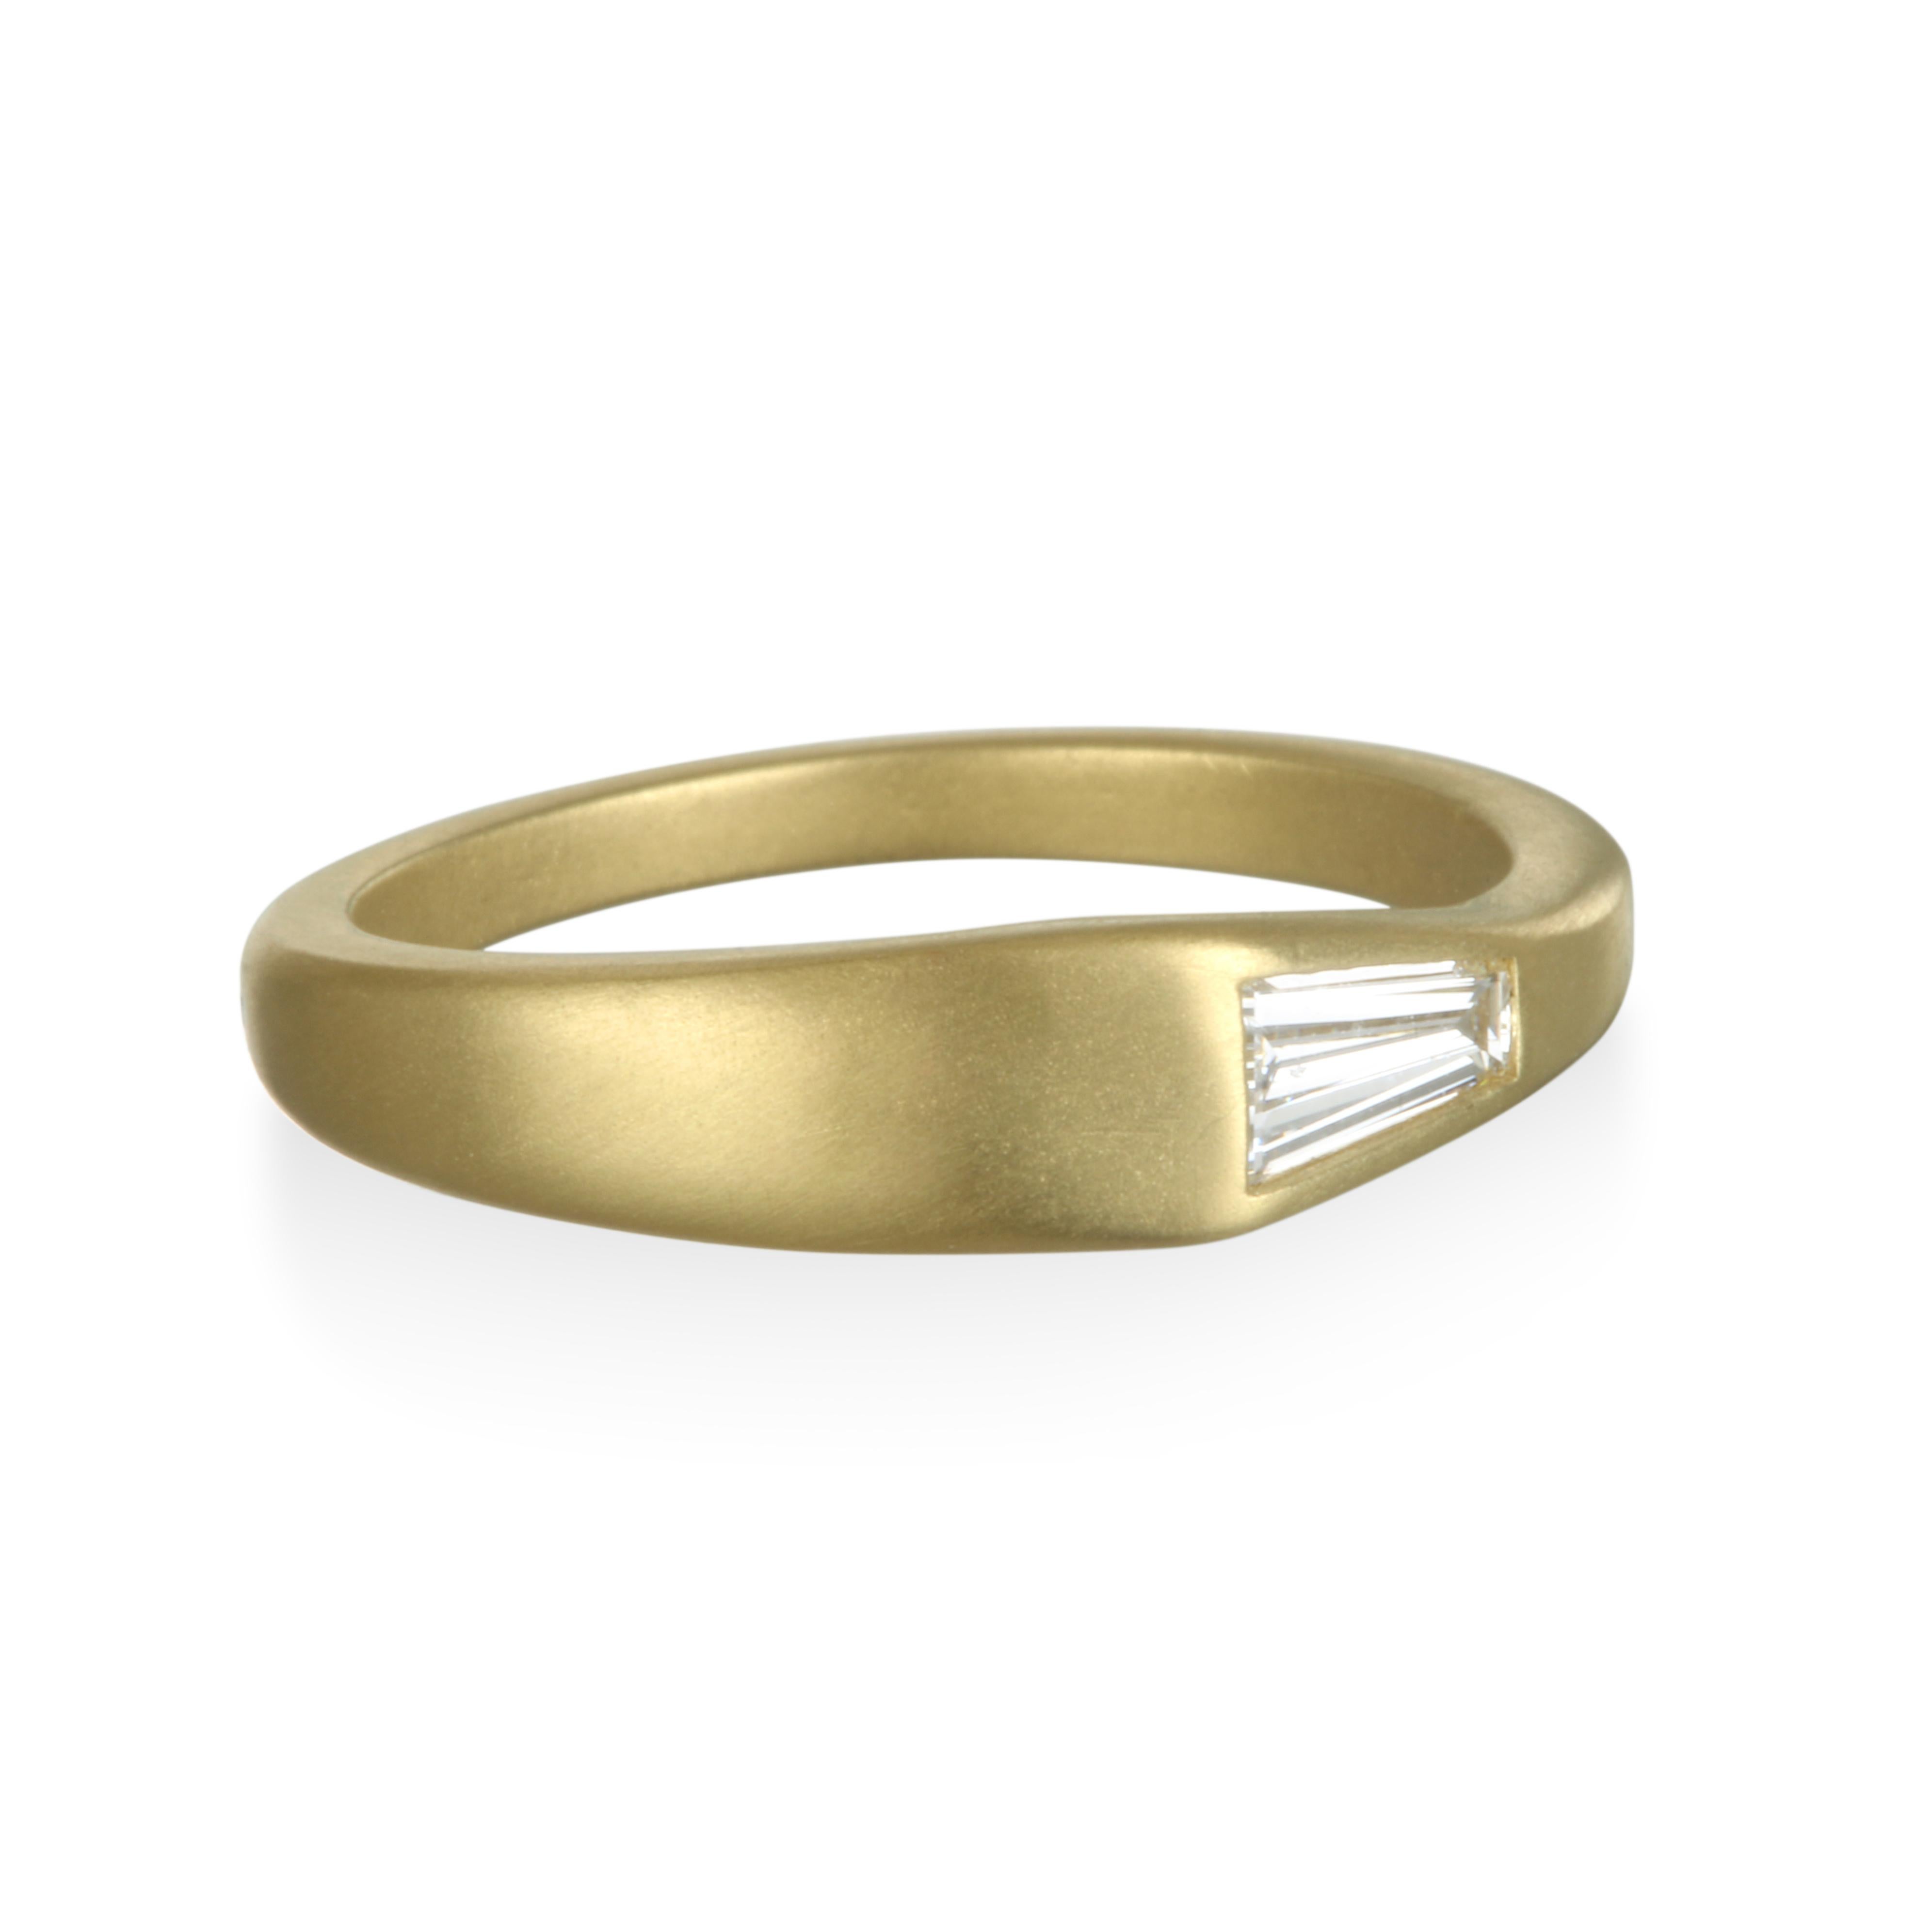 Modern und minimalistisch.  Mit diesem Diamantring aus 18 Karat Gold* können Sie sich das Ja-Wort geben.  Oder Sie können einen Stapel erstellen und Ihren eigenen Stil hervorheben.  Der unerwartete Diamant-Baguette leuchtet hell gegen die matte